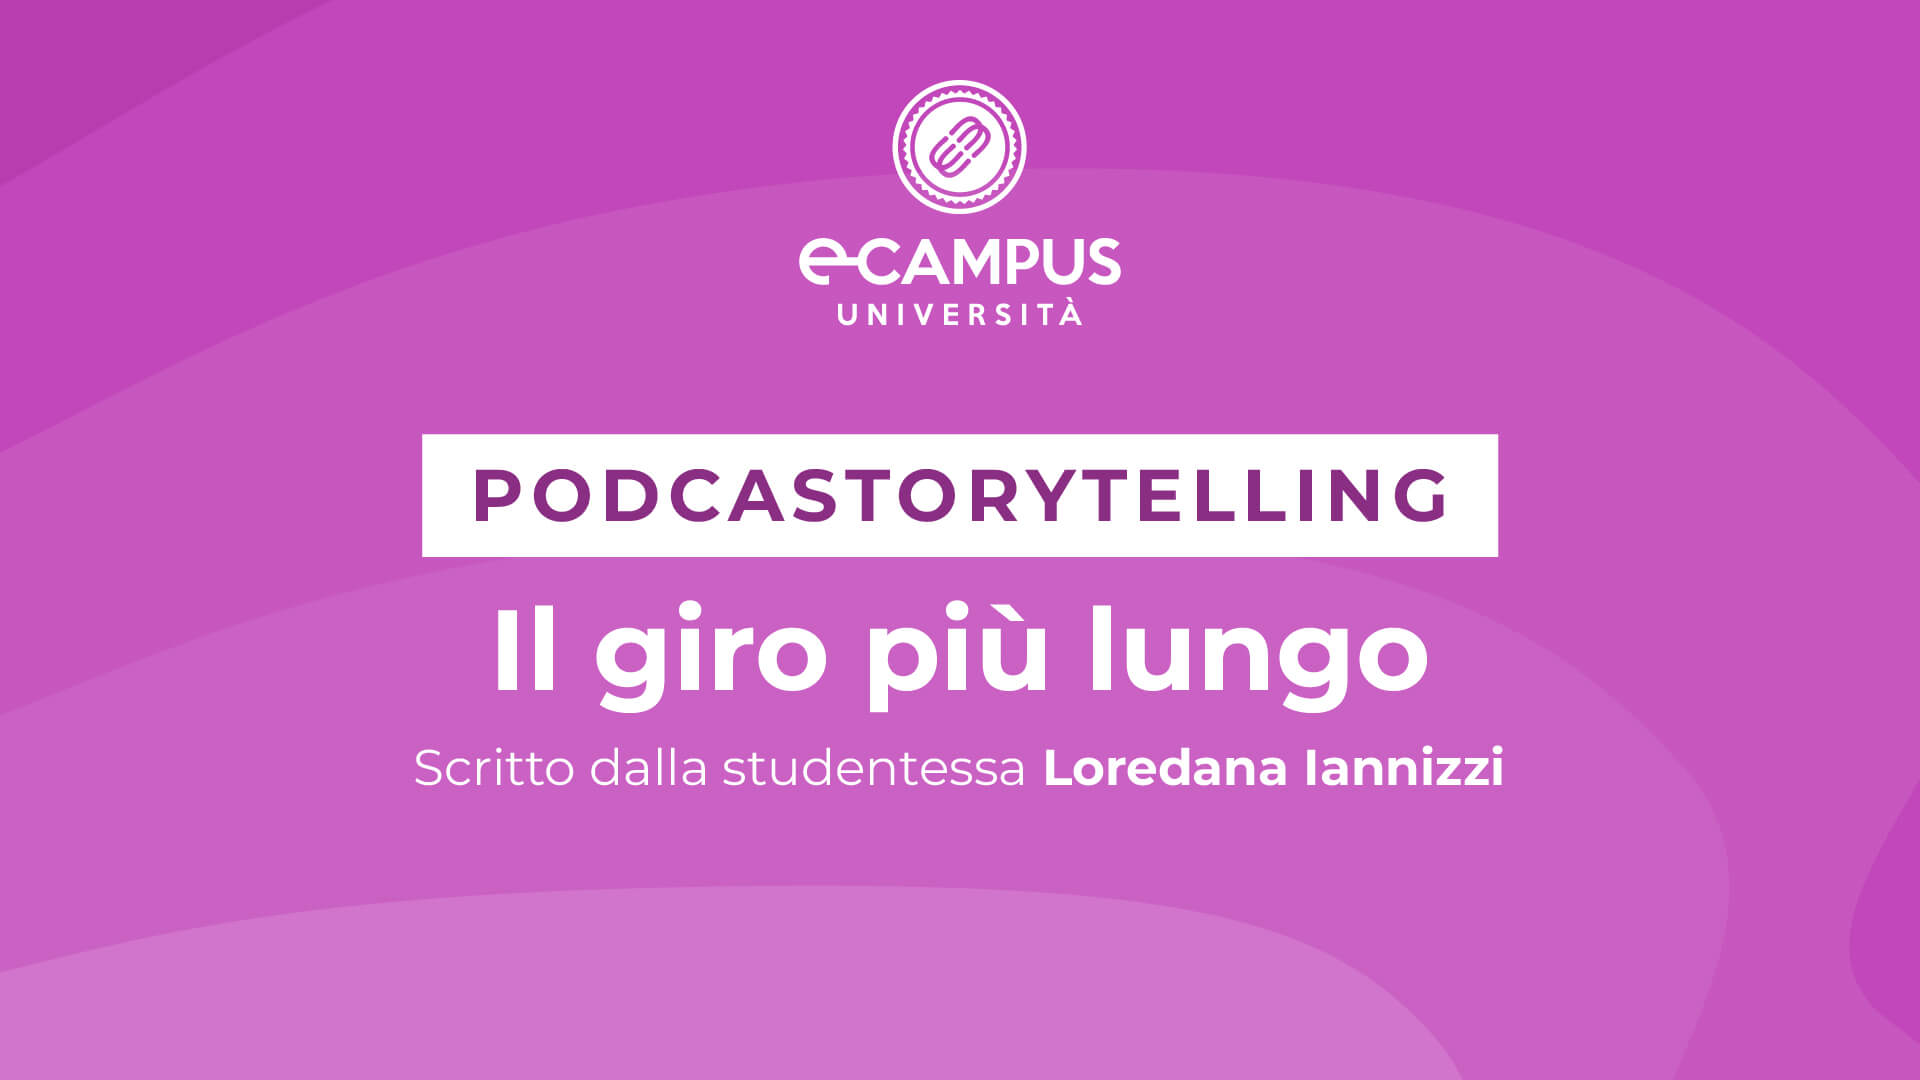 podcastorytelling master in storytelling ecampus